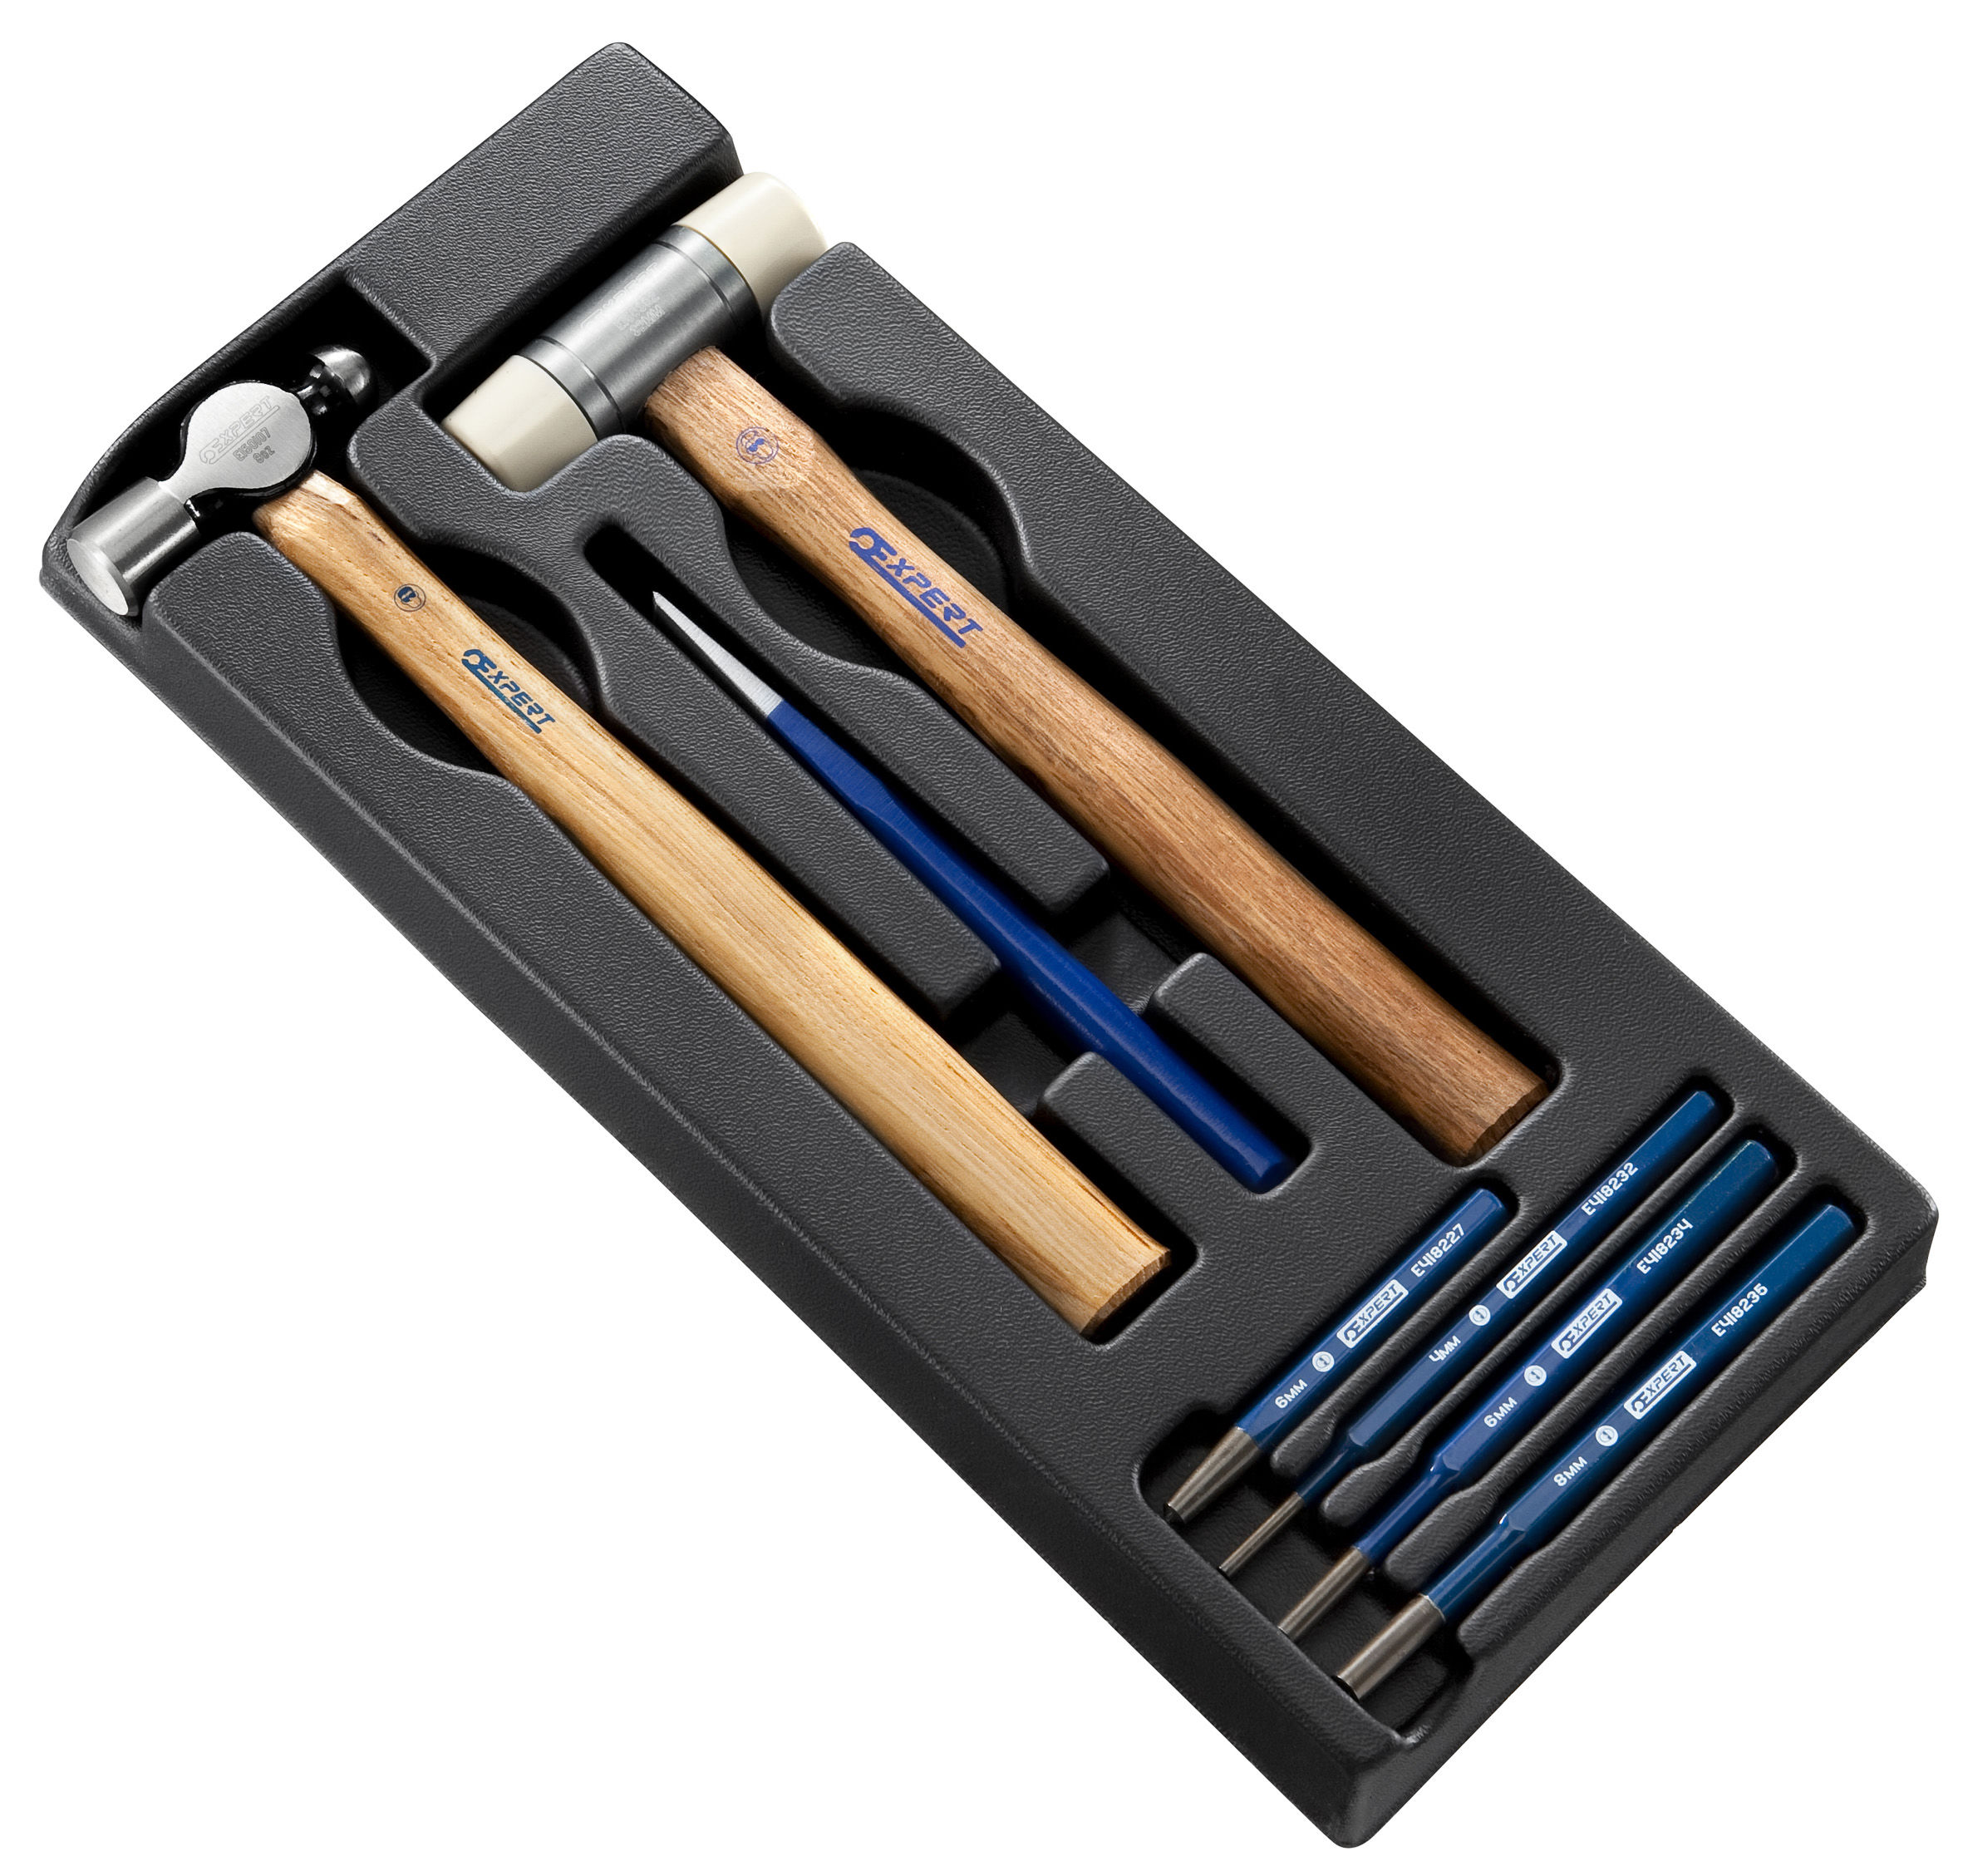 1.E150803 Schokhulpmiddel modul bal penn hamer